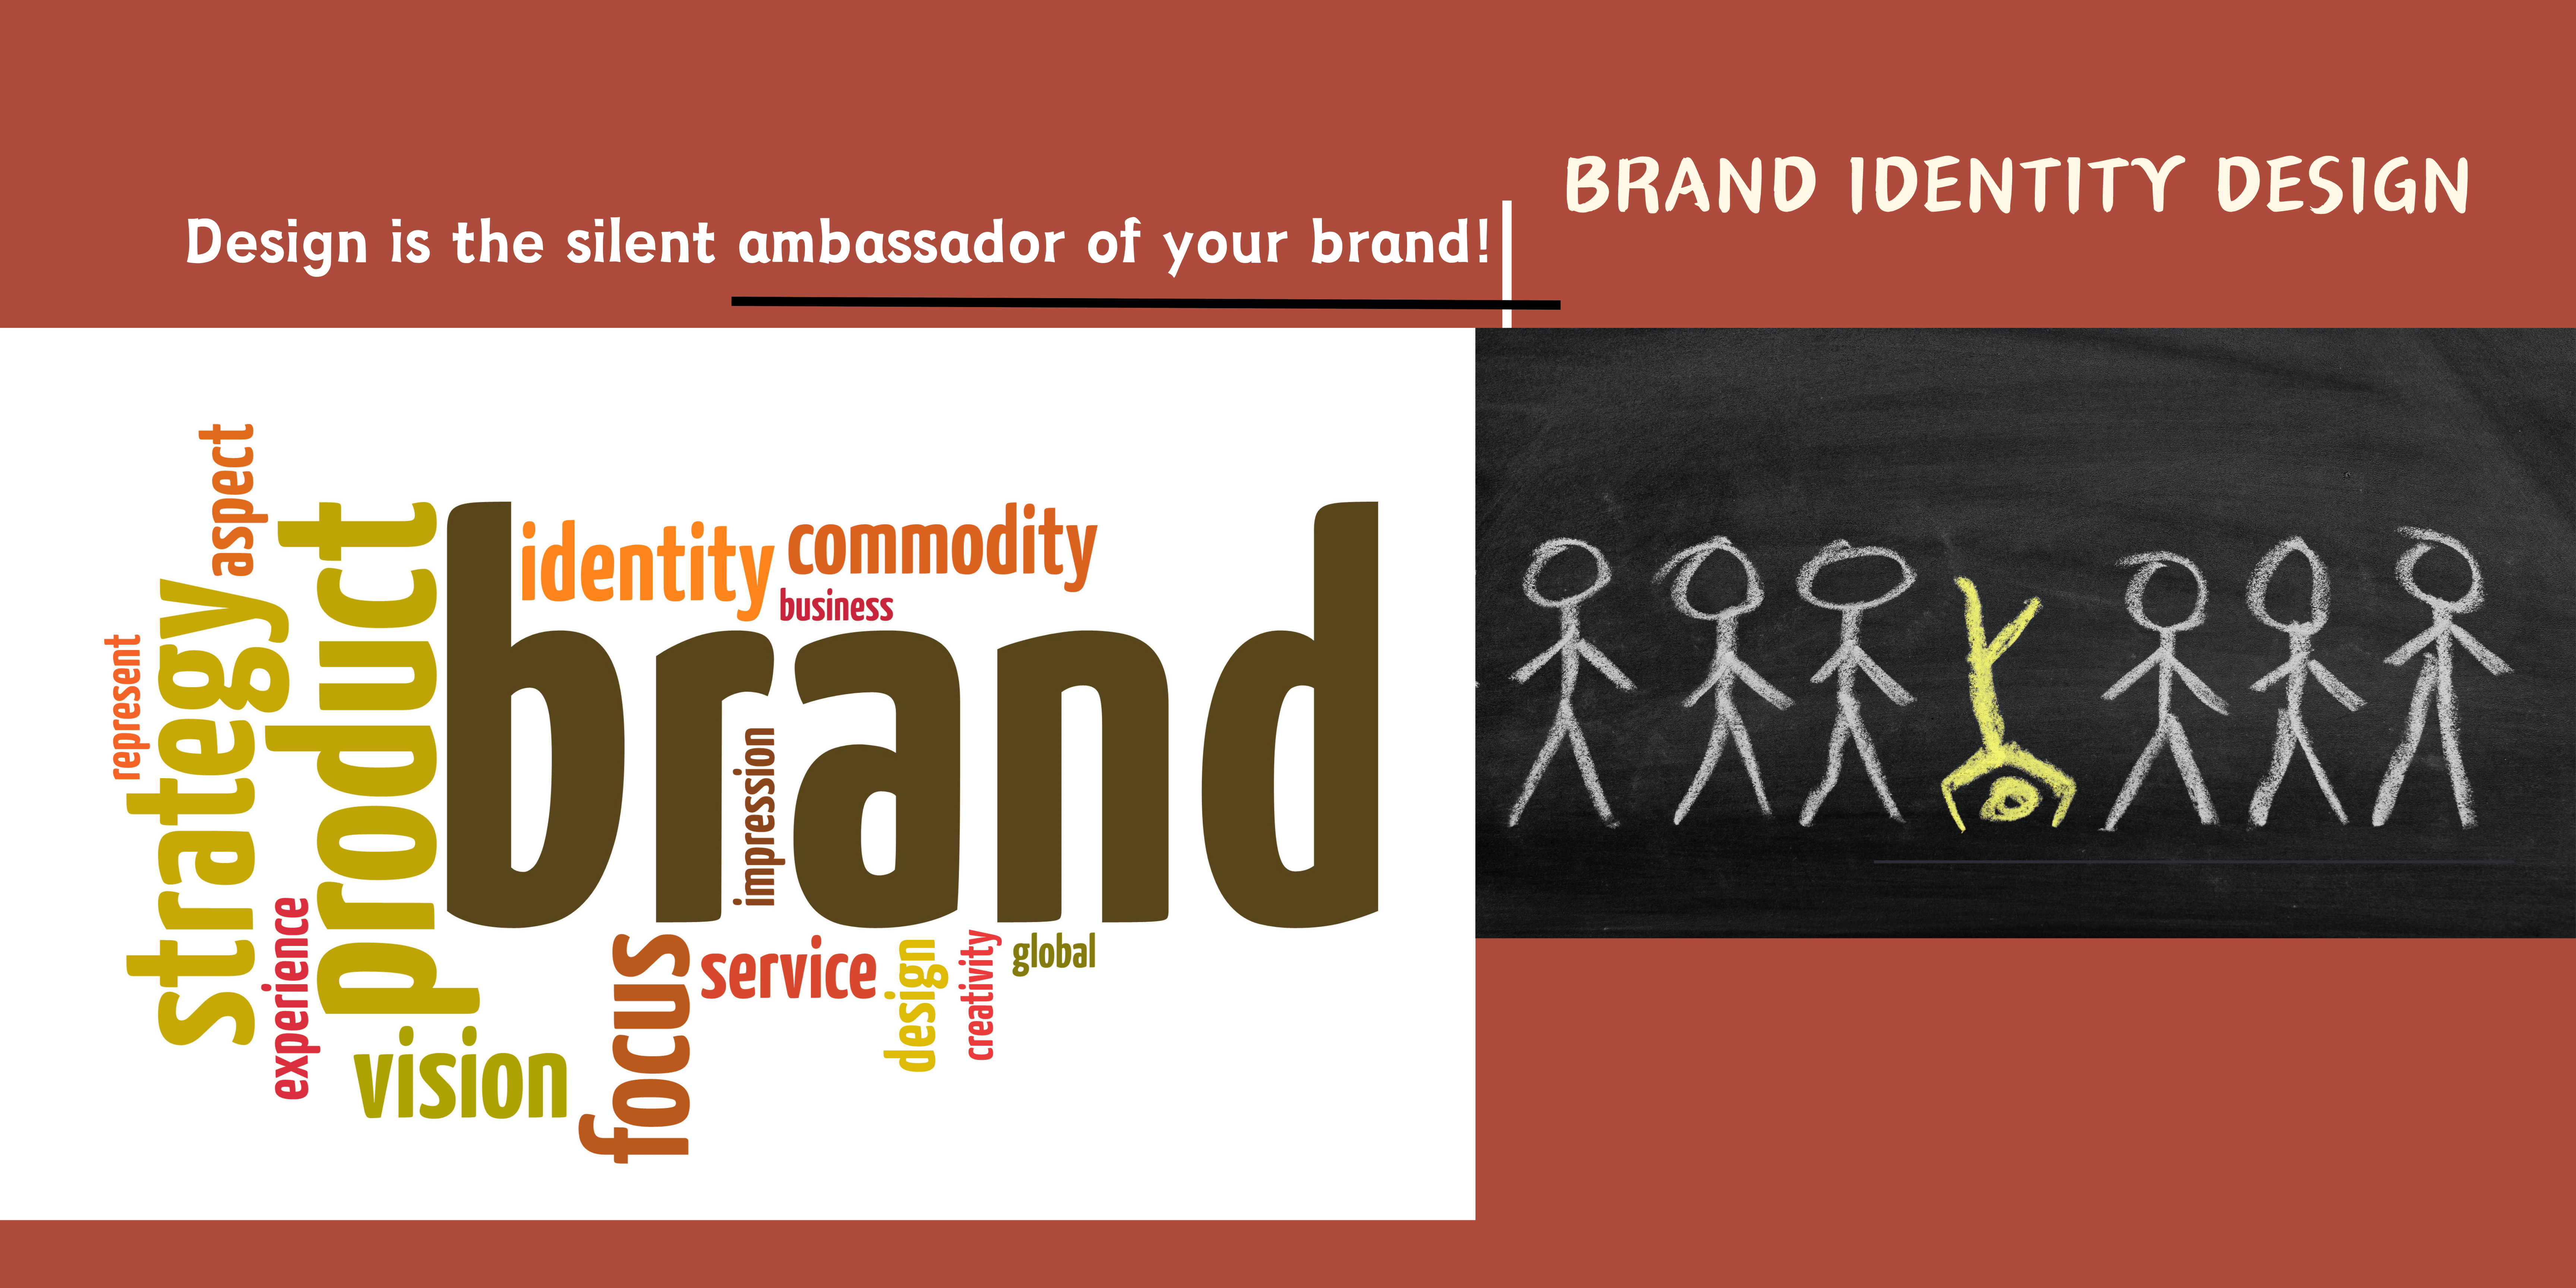 Customized Brand Identity Design services to establish a unique brand presence